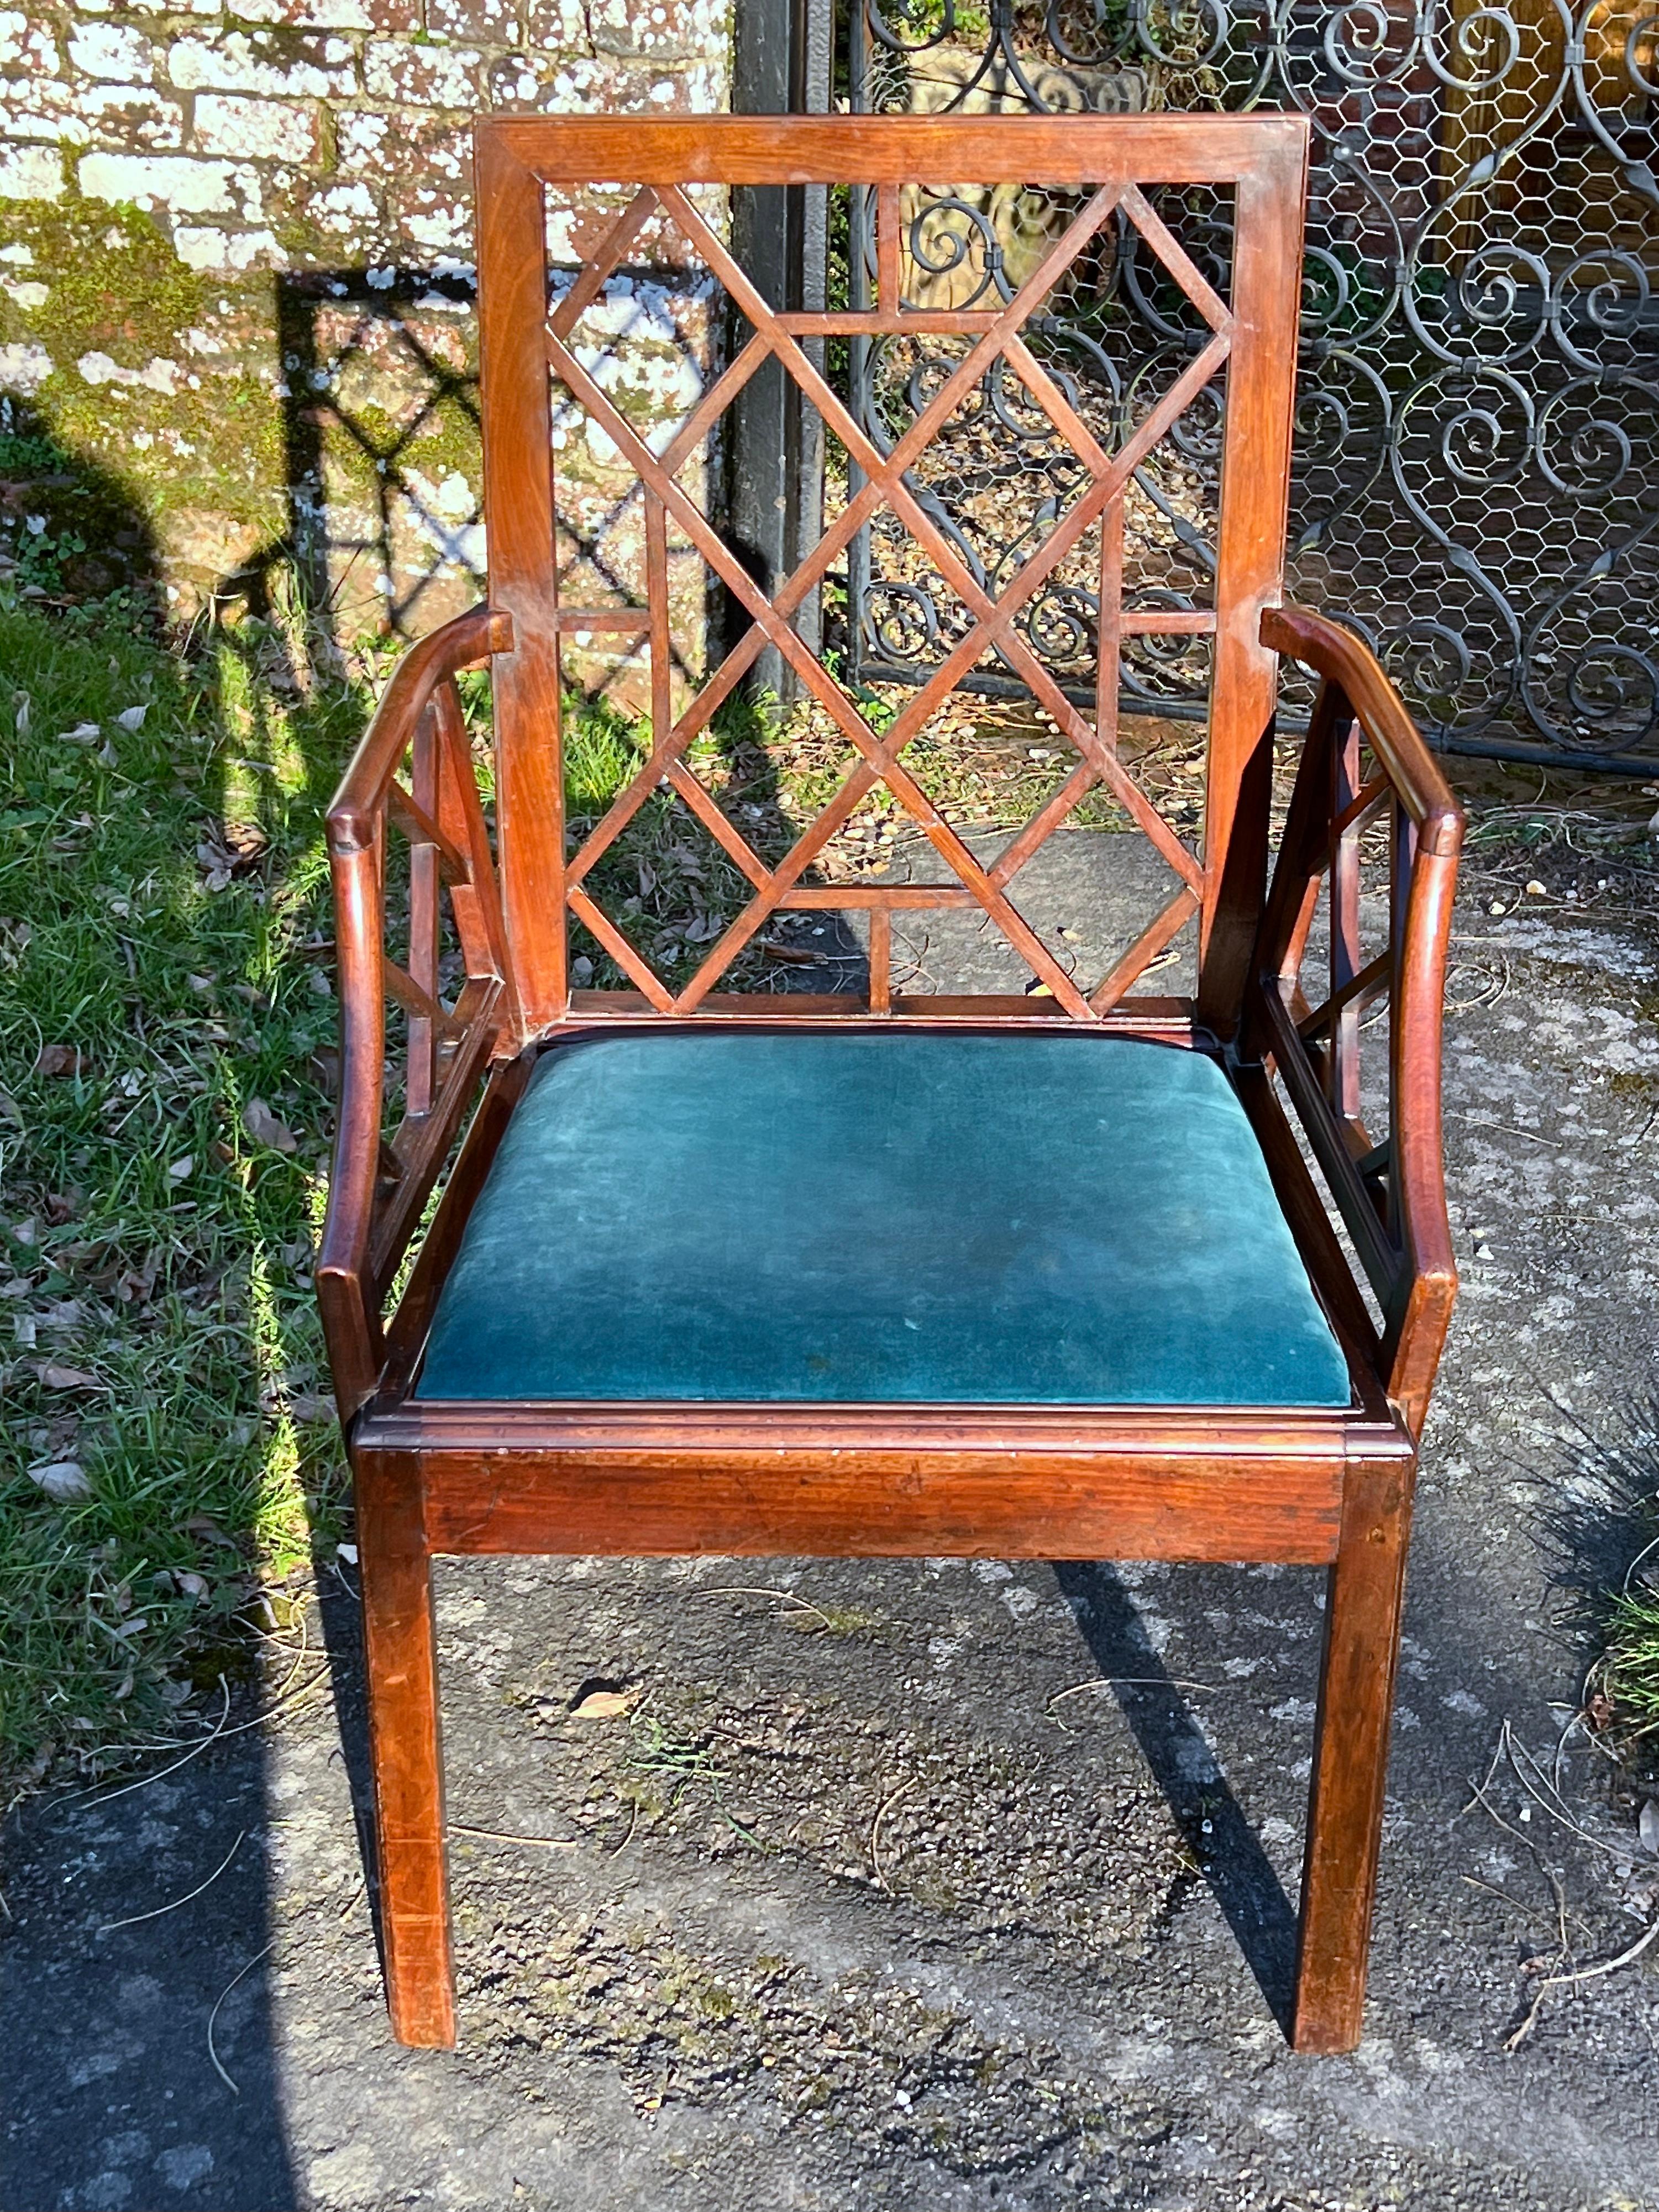 Un rare fauteuil ouvert Cockpen en acajou du 18e siècle de très bonne qualité. Période George III, vers 1760.

Ce fauteuil ancien est en acajou avec une armature ajourée (ou treillis chinois) de style chinoiserie, y compris dans les premiers